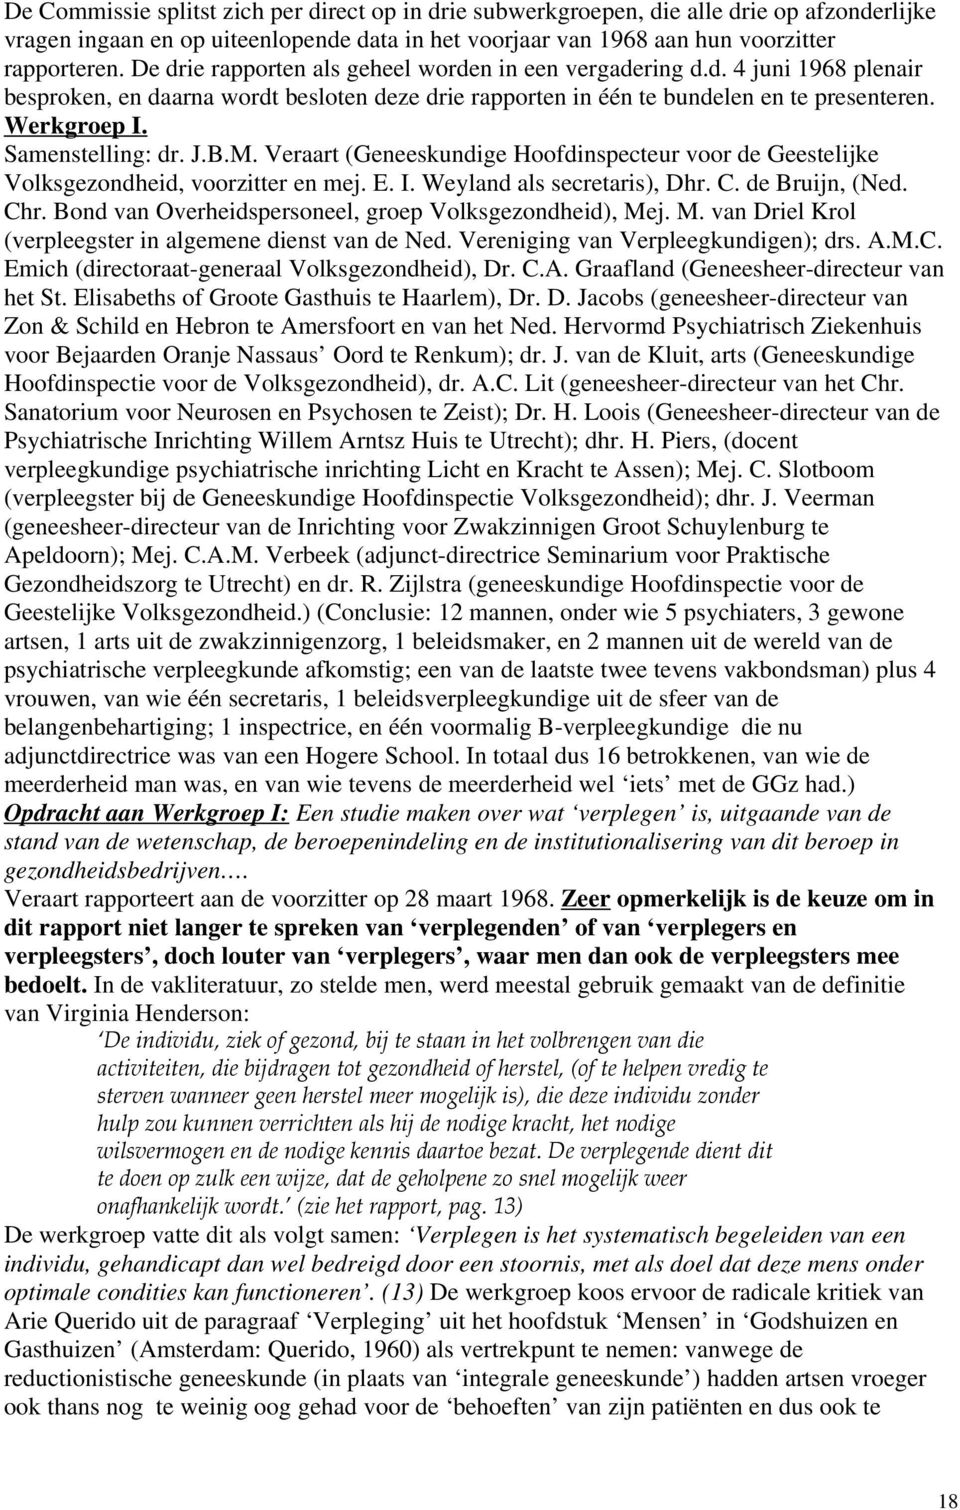 Samenstelling: dr. J.B.M. Veraart (Geneeskundige Hoofdinspecteur voor de Geestelijke Volksgezondheid, voorzitter en mej. E. I. Weyland als secretaris), Dhr. C. de Bruijn, (Ned. Chr.